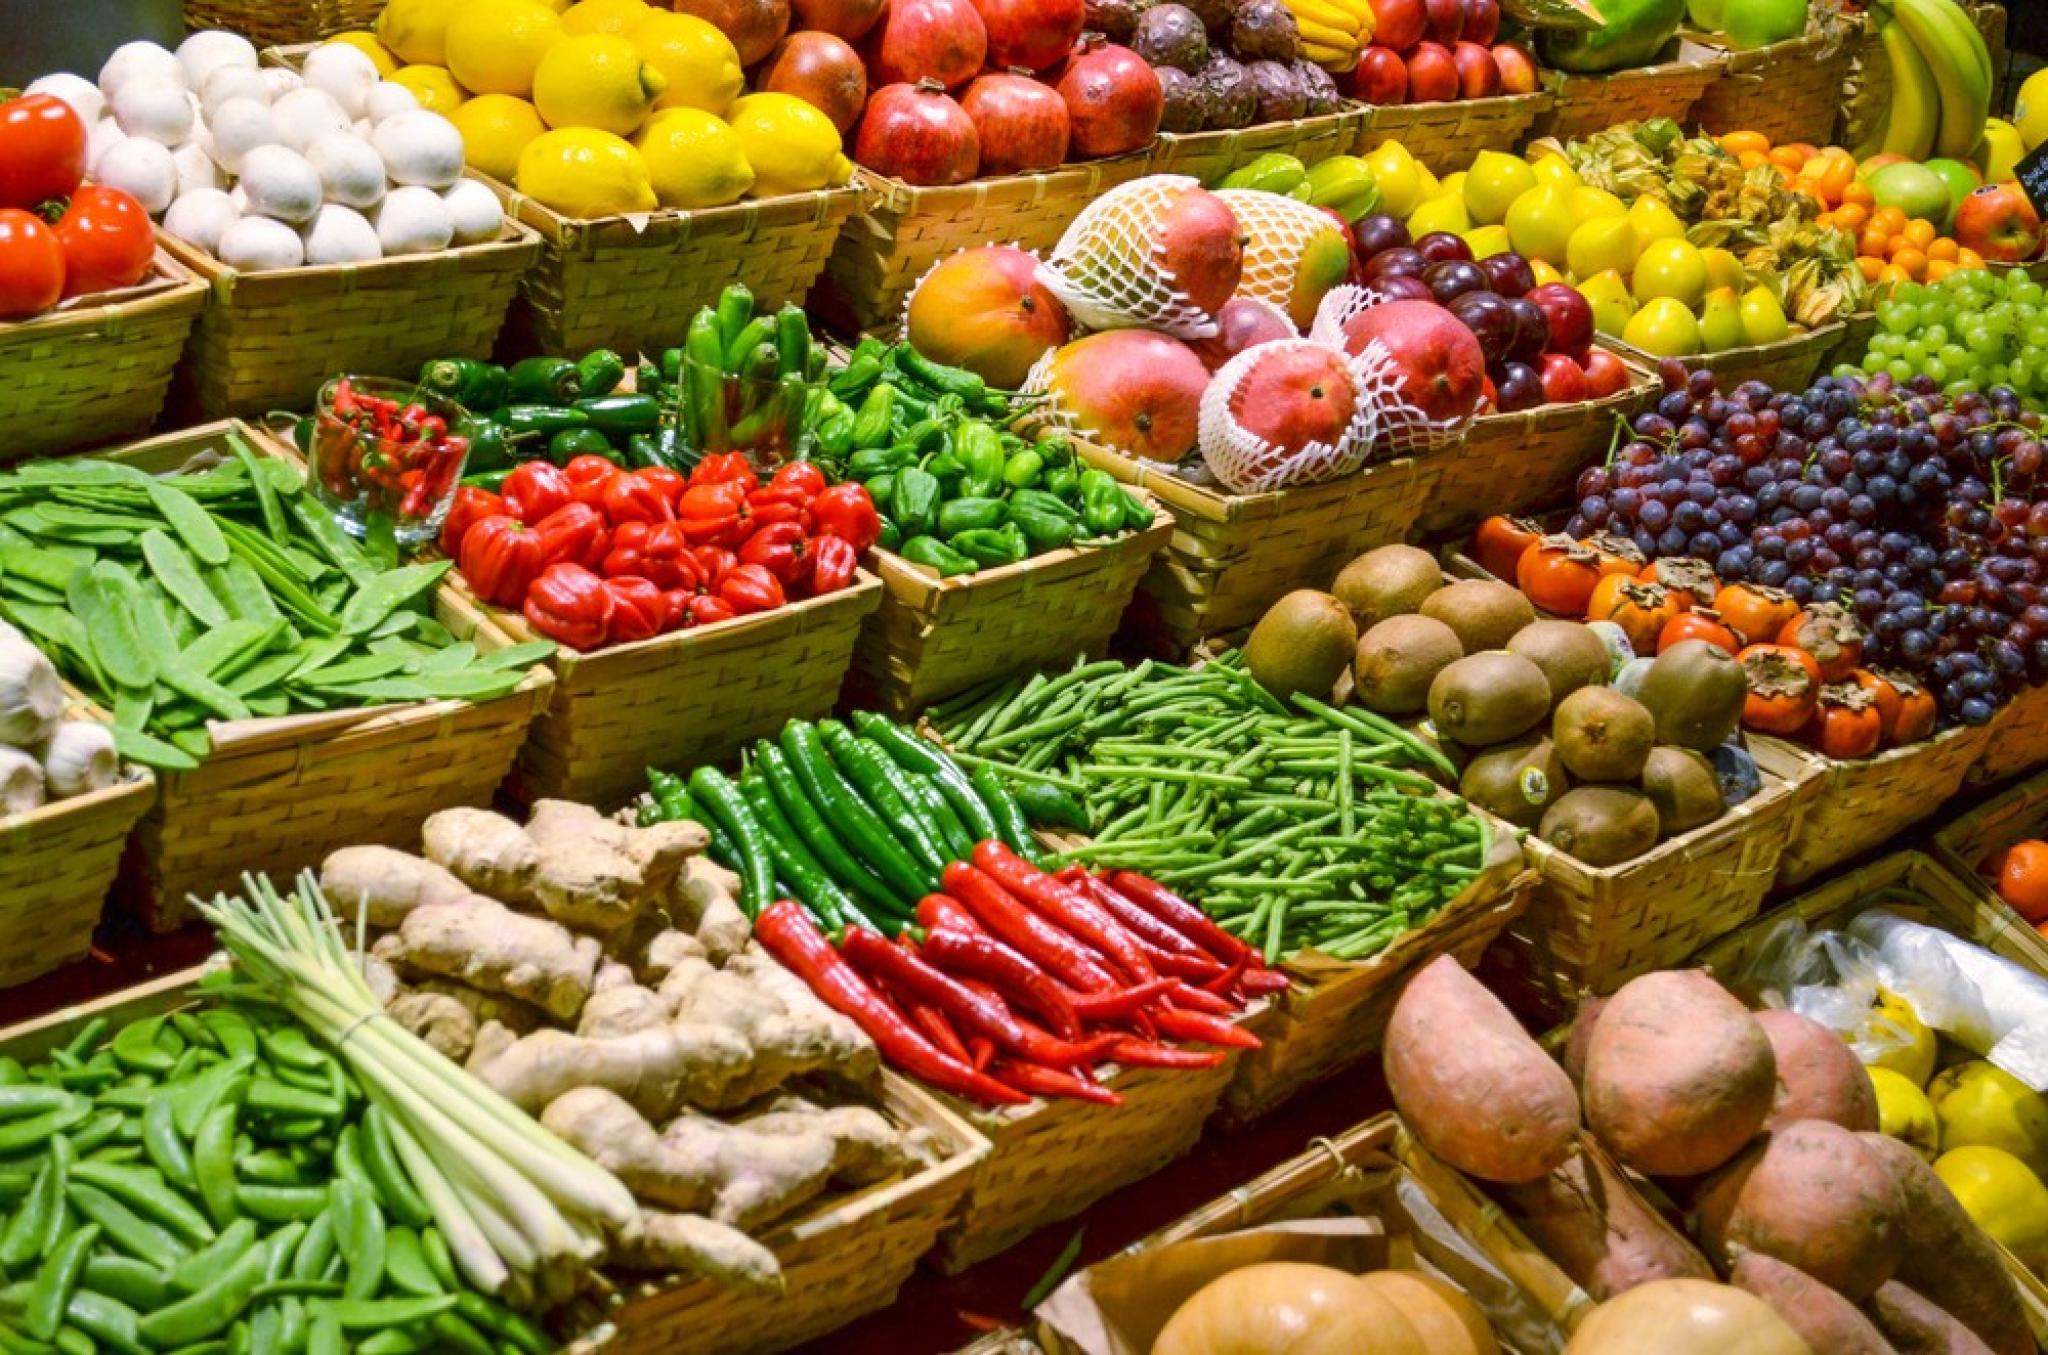 local: Fructe sau legume contra PET uri doze sau sticle la Carrefour » Monitorul Suceava - Marţi, 20 2022